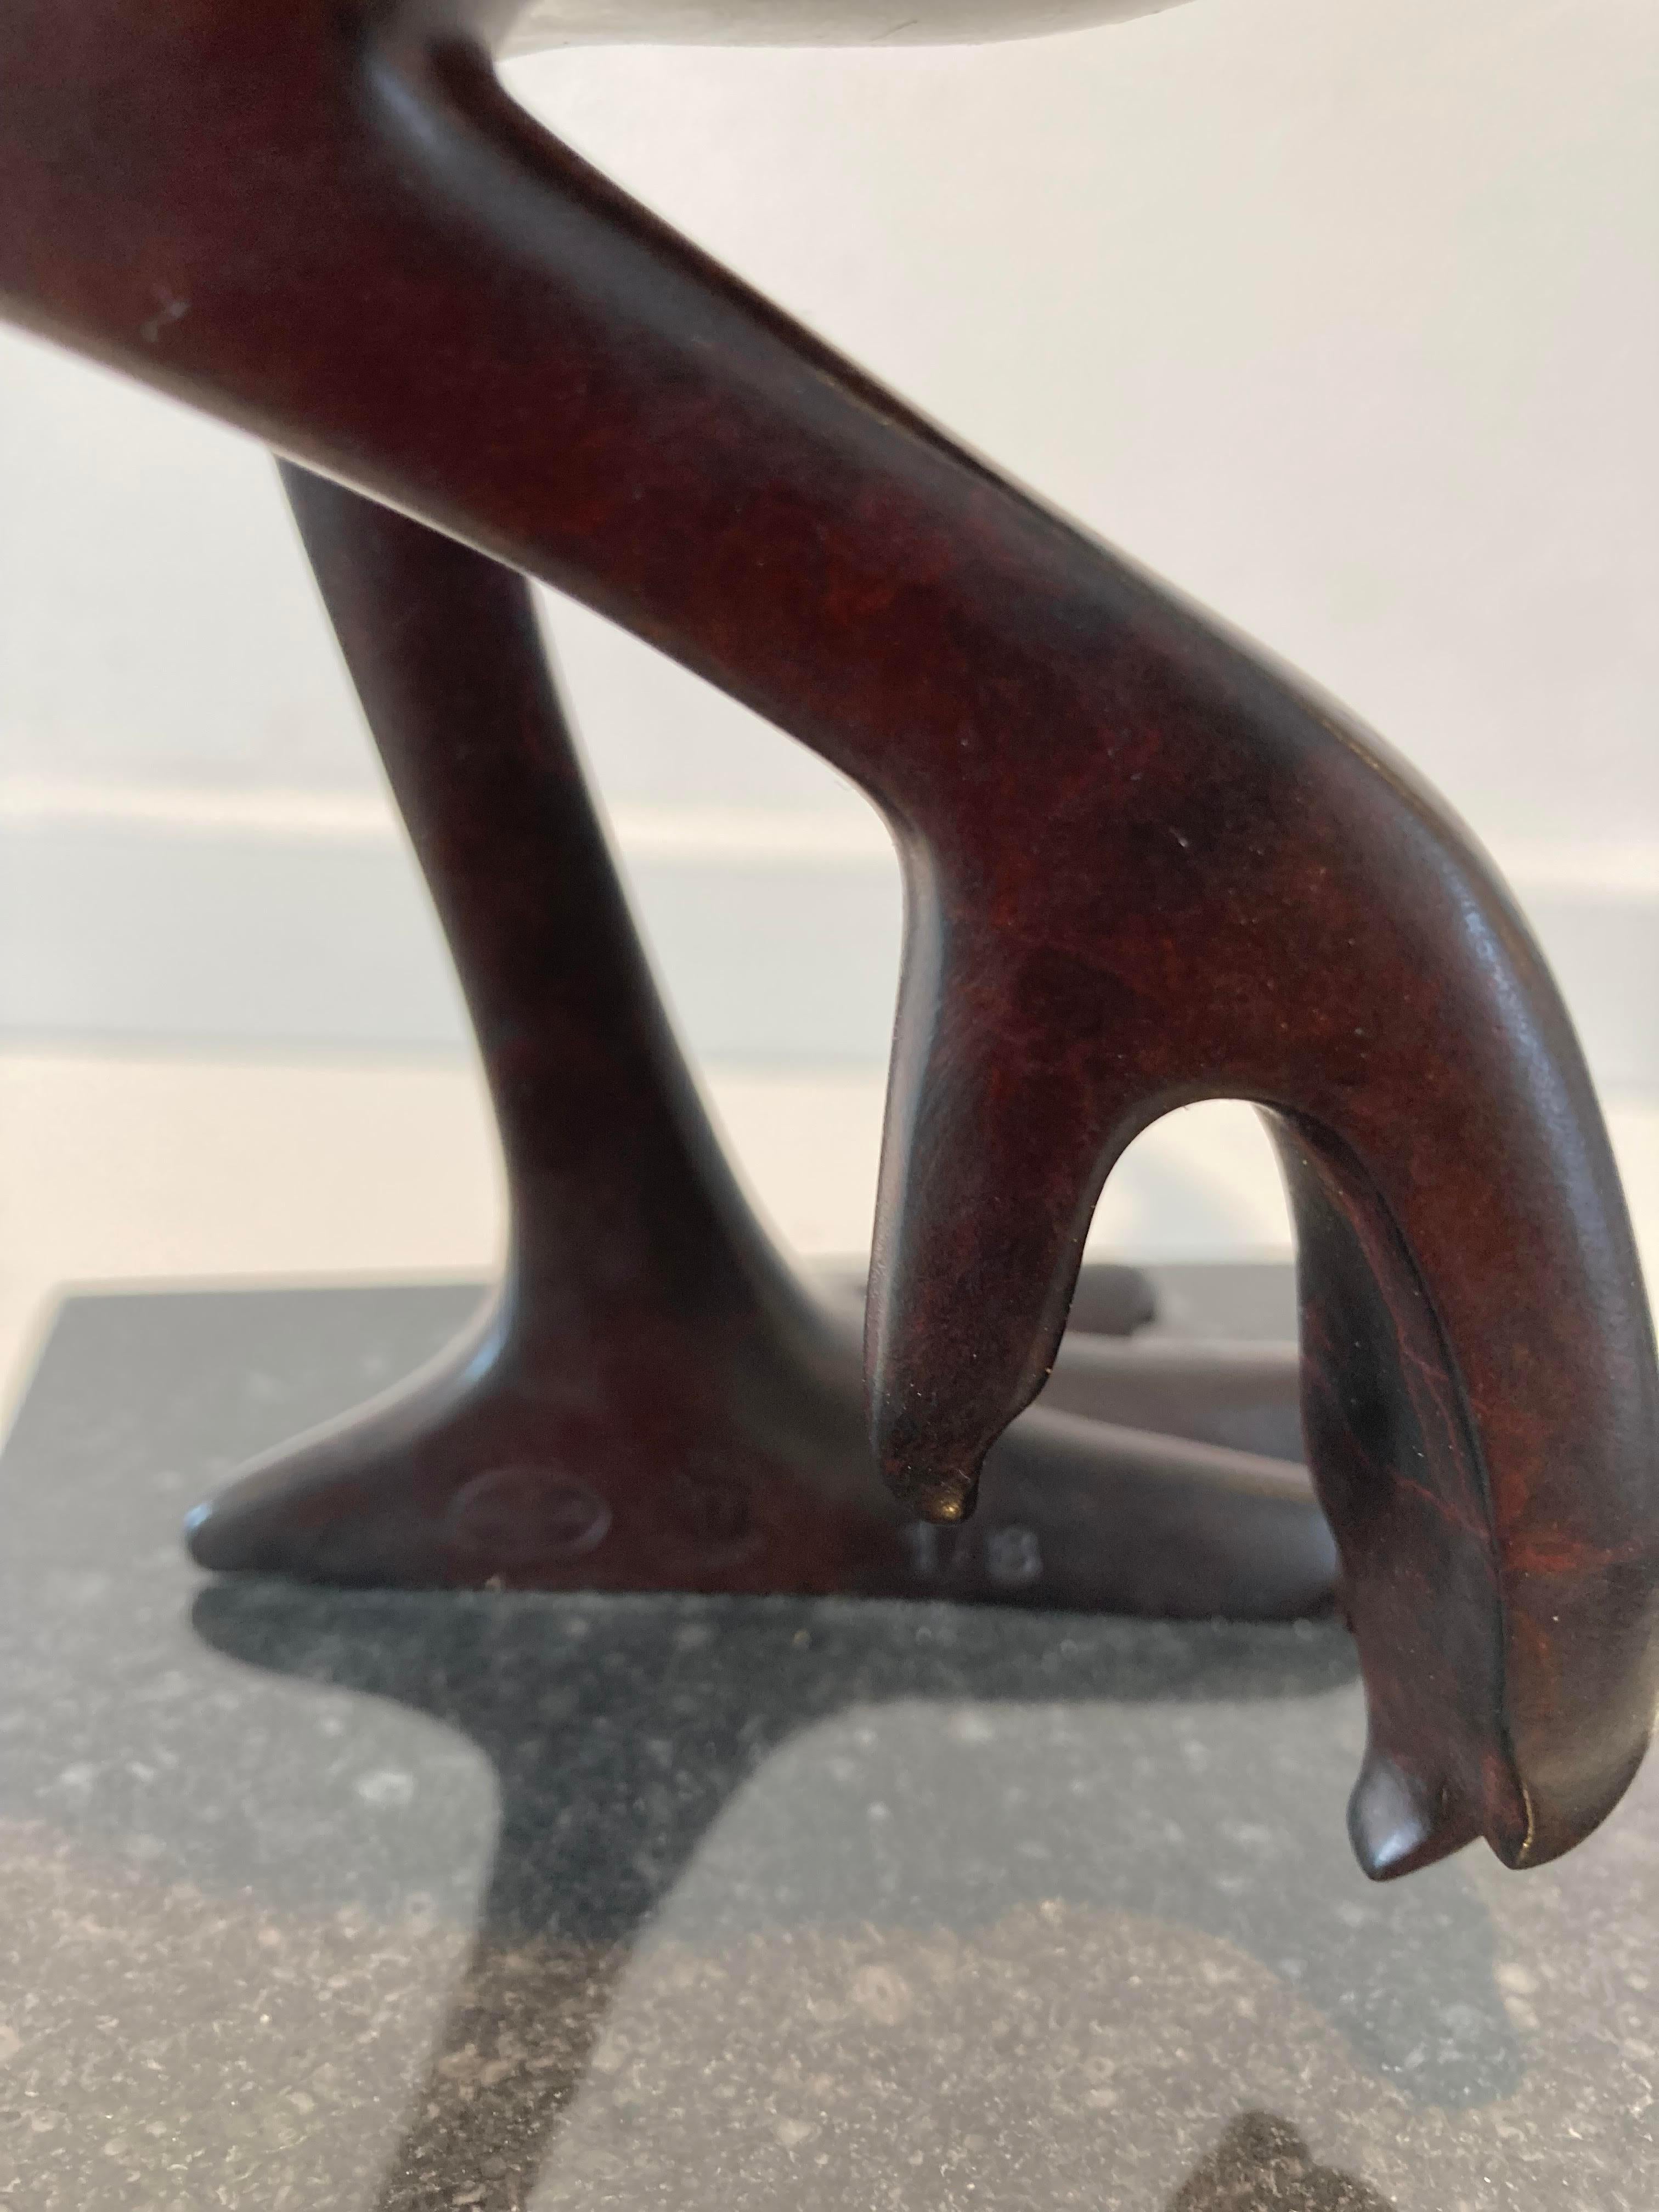 
Fazant no. 9 (Faisan) Oiseau Animal Sculpture en bronze Patine marron foncé En stock

Evert den Hartog (né à Groot-Ammers, aux Pays-Bas, en 1949) a suivi une formation de sculpteur à l'Académie des arts visuels de Rotterdam. Dans les années